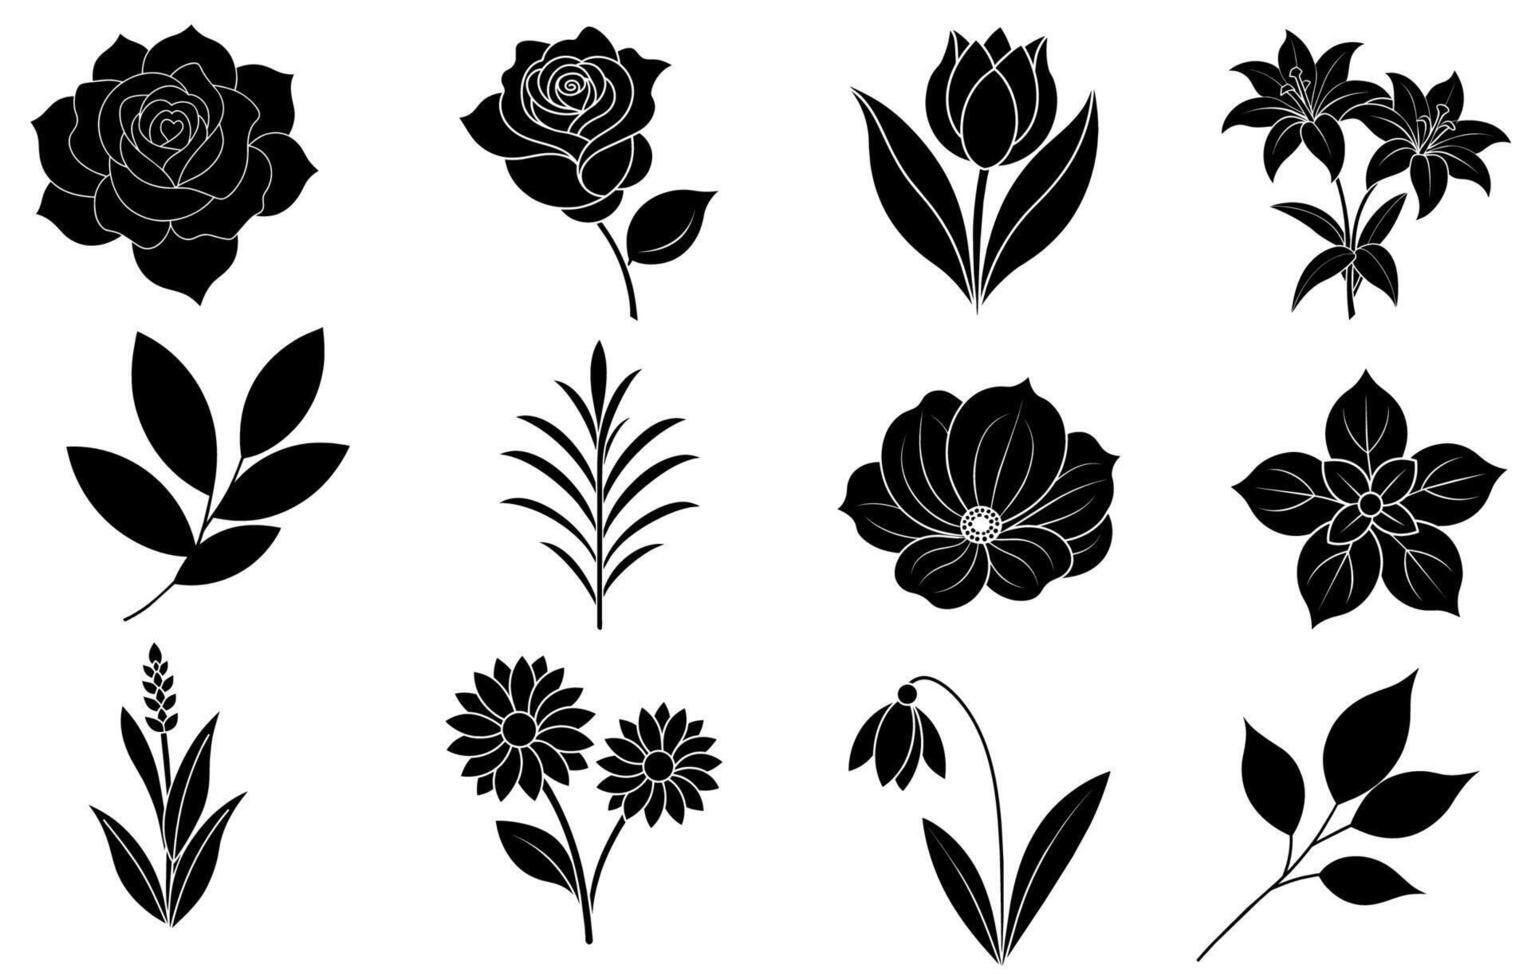 verzameling van silhouet bloem en blad elementen vector